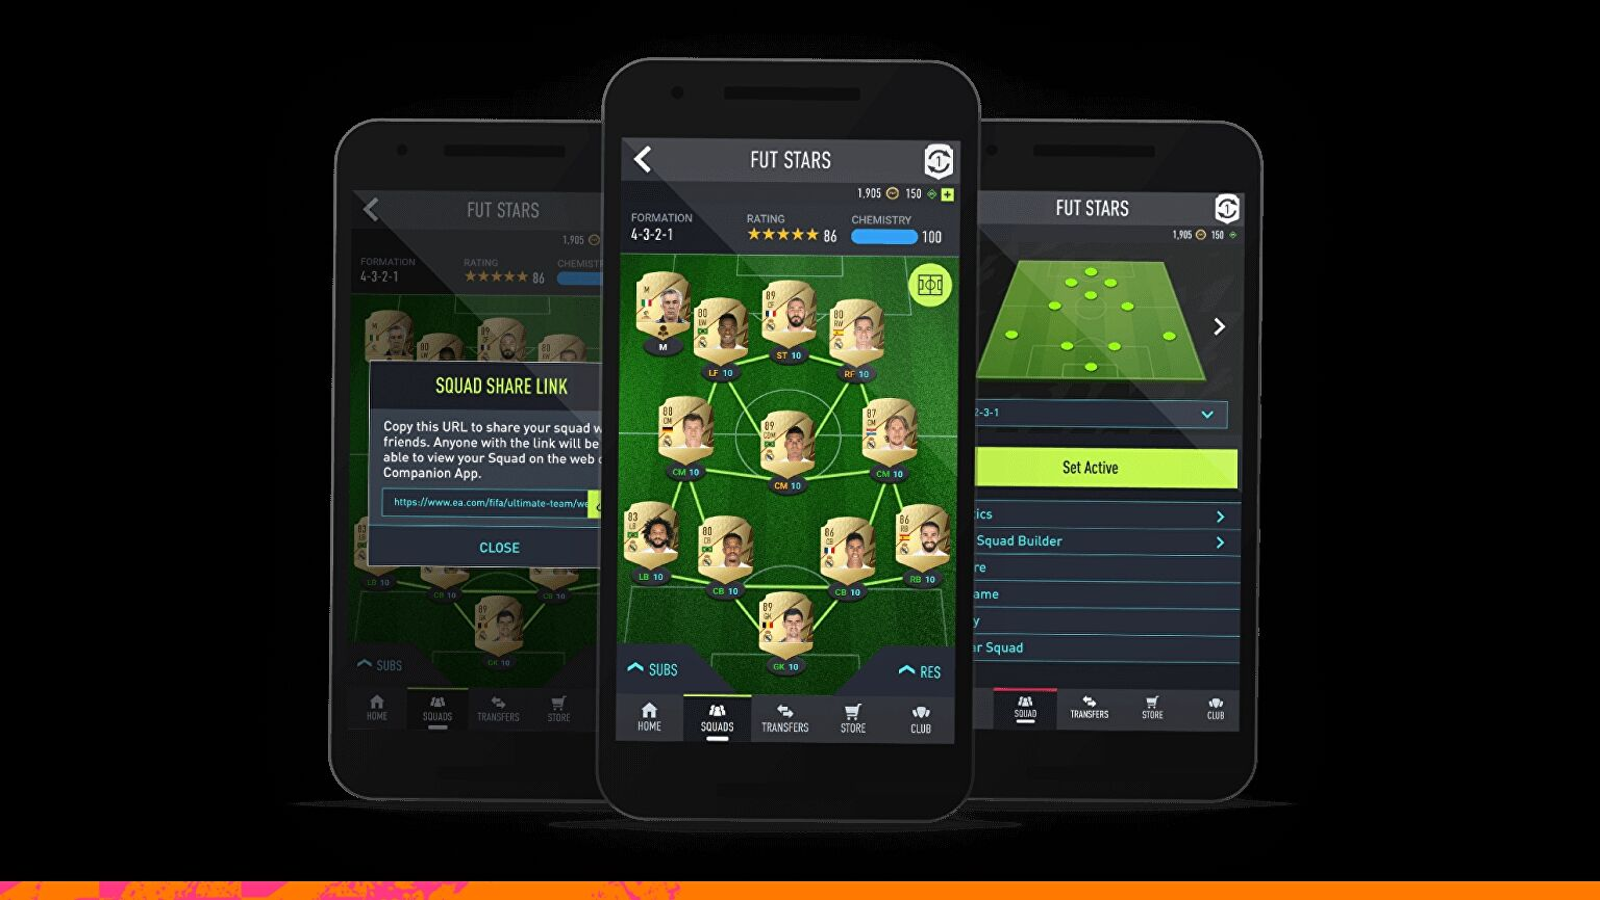 FIFA 23: Web App do game já está disponível; veja como acessar